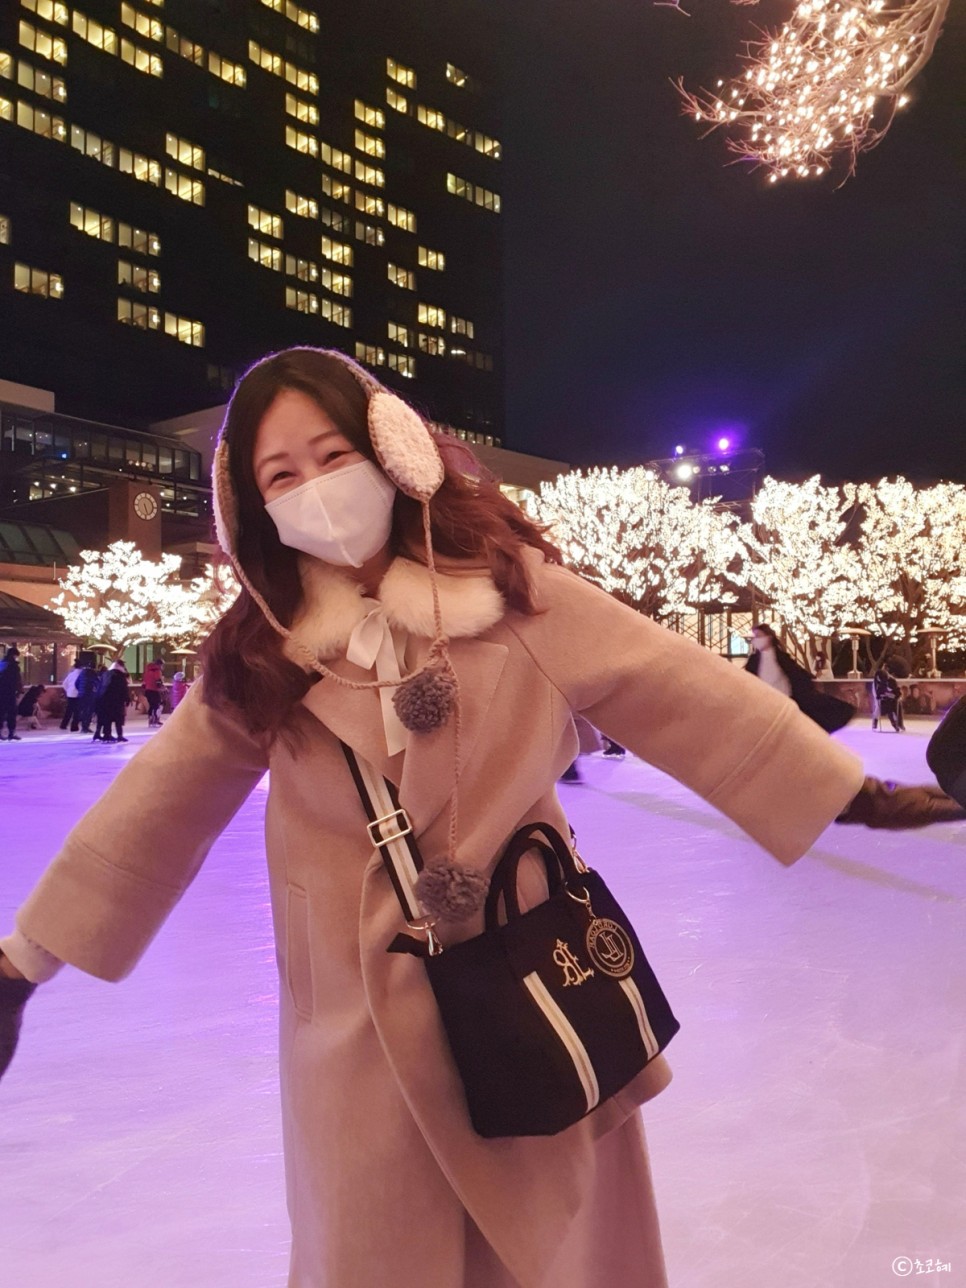 그랜드 하얏트 서울 아이스링크 겨울 데이트 추천!